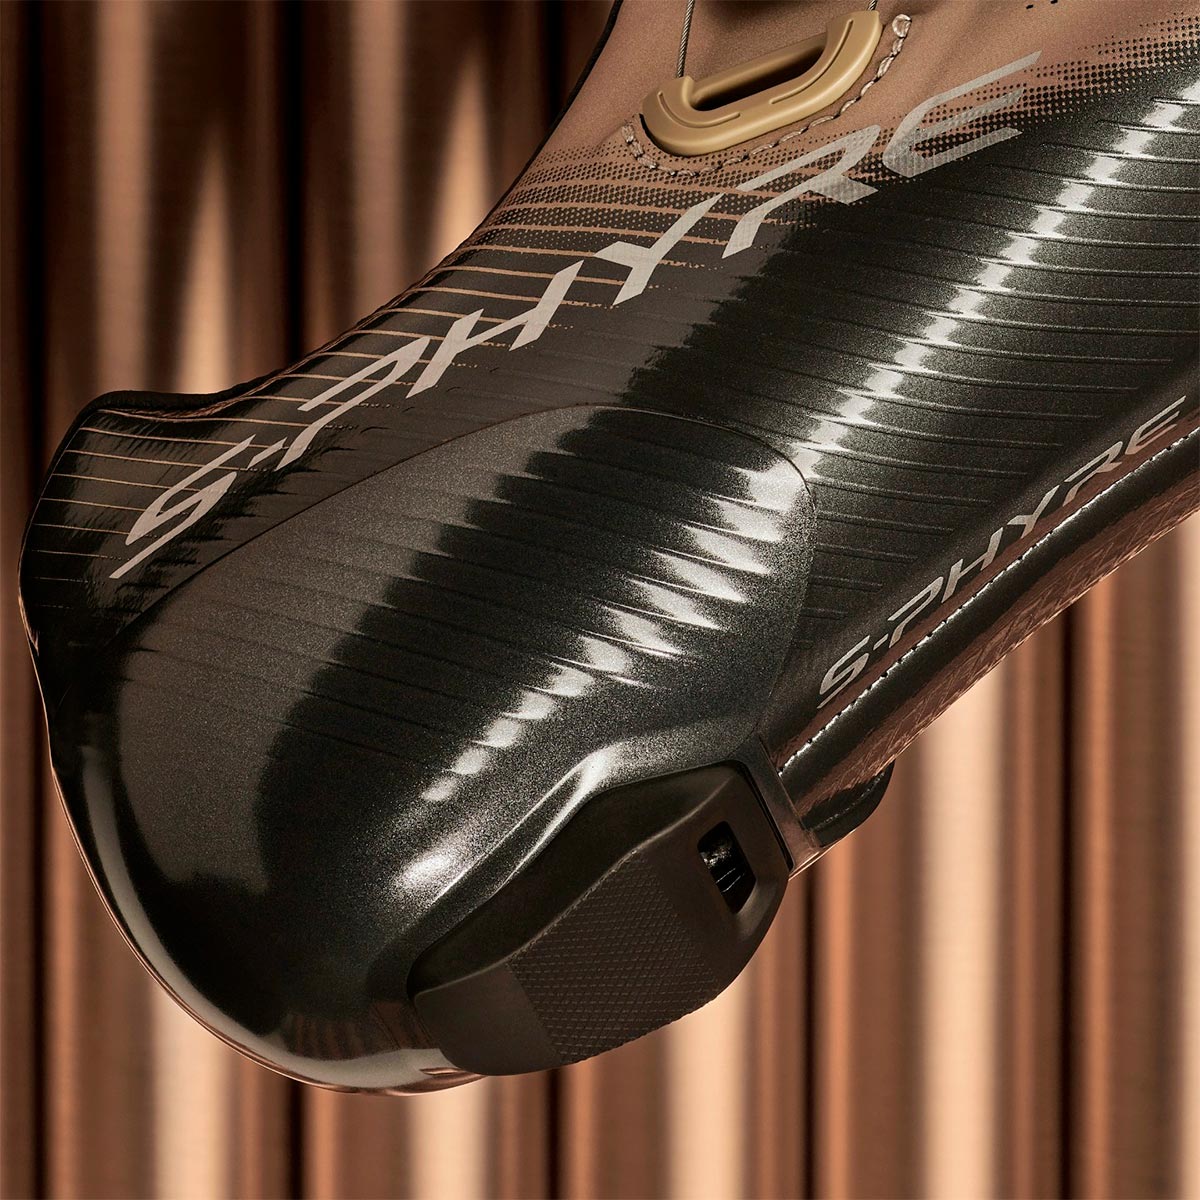 Las zapatillas Shimano S-Phyre RC903 estrenan una edición limitada en color Champagne para celebrar las clásicas de primavera